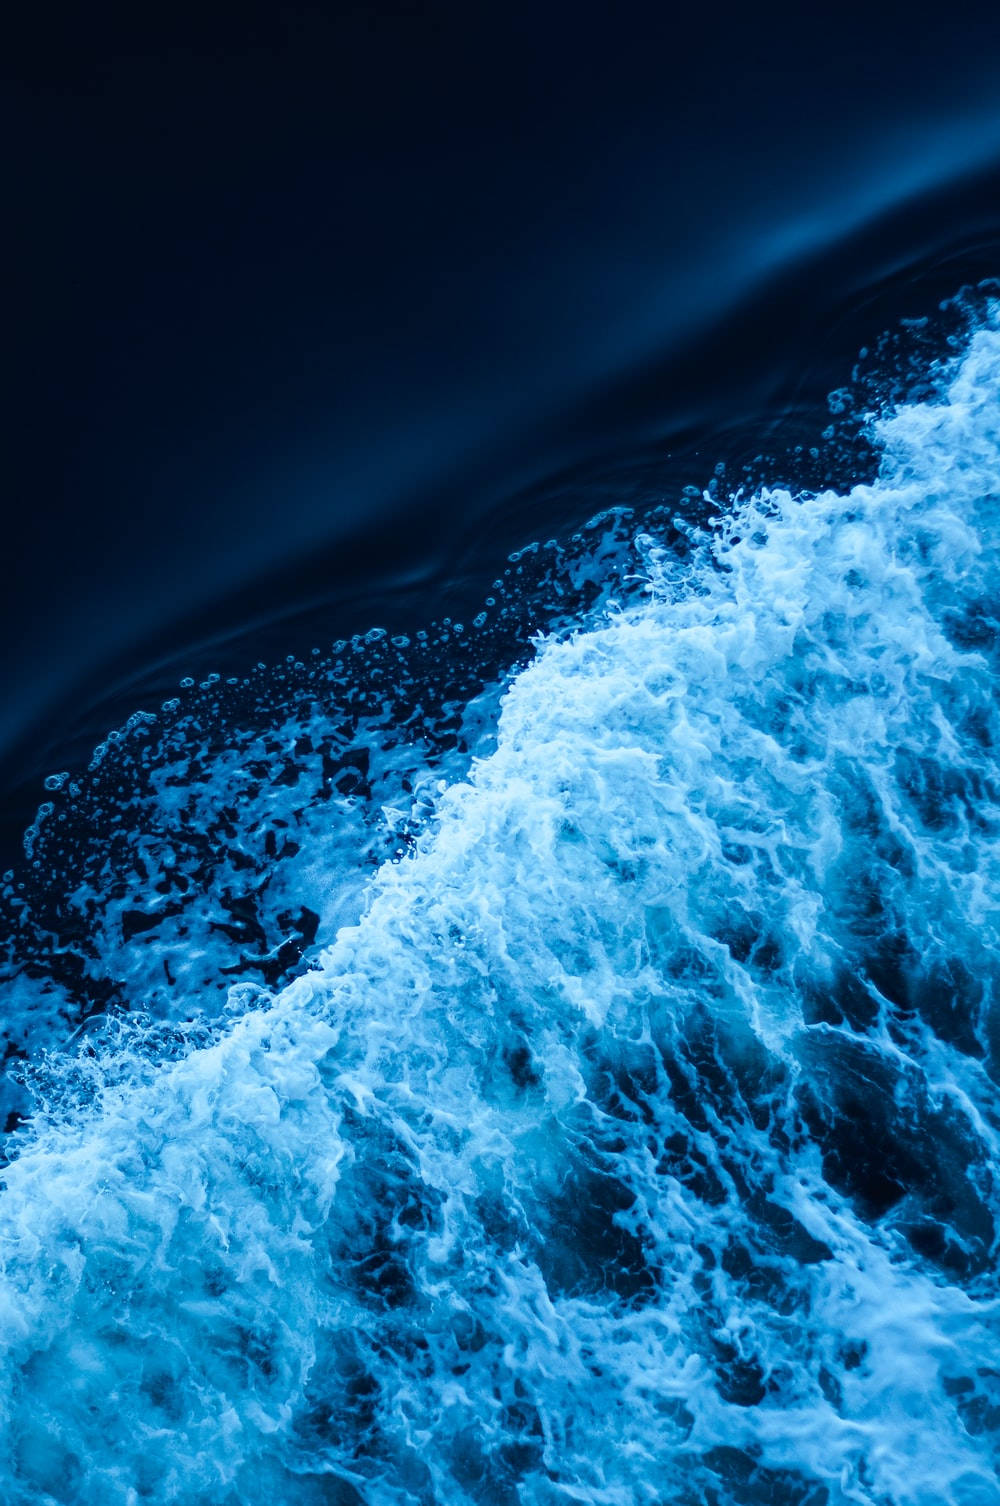 Ocean Waves Aesthetic Dark Blue Hd Background